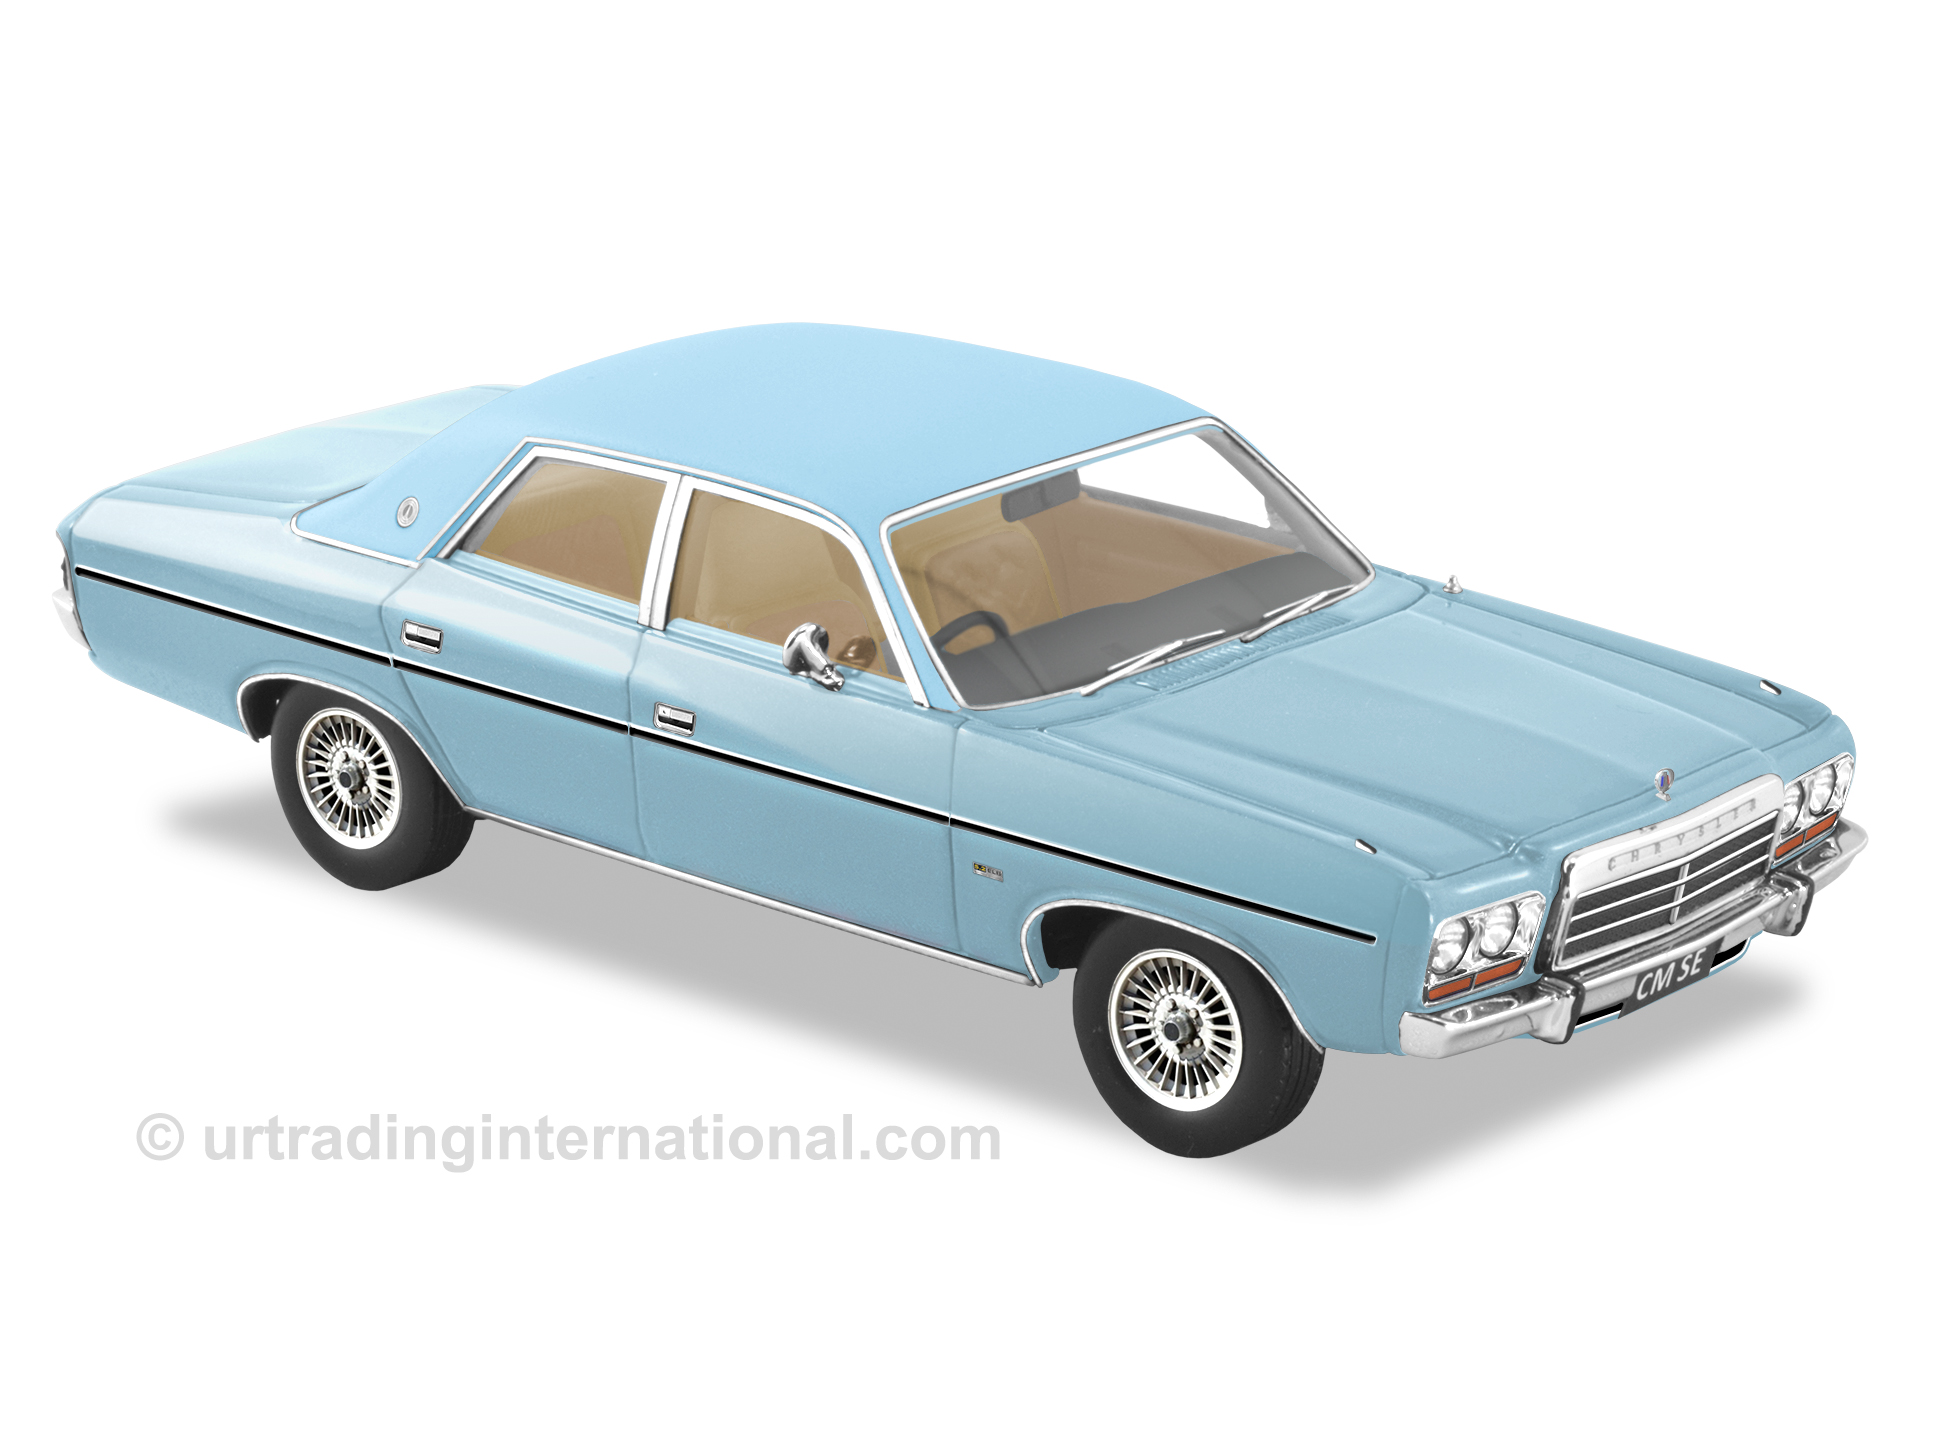 1980 Chrysler CM Regal SE Sedan – Blue